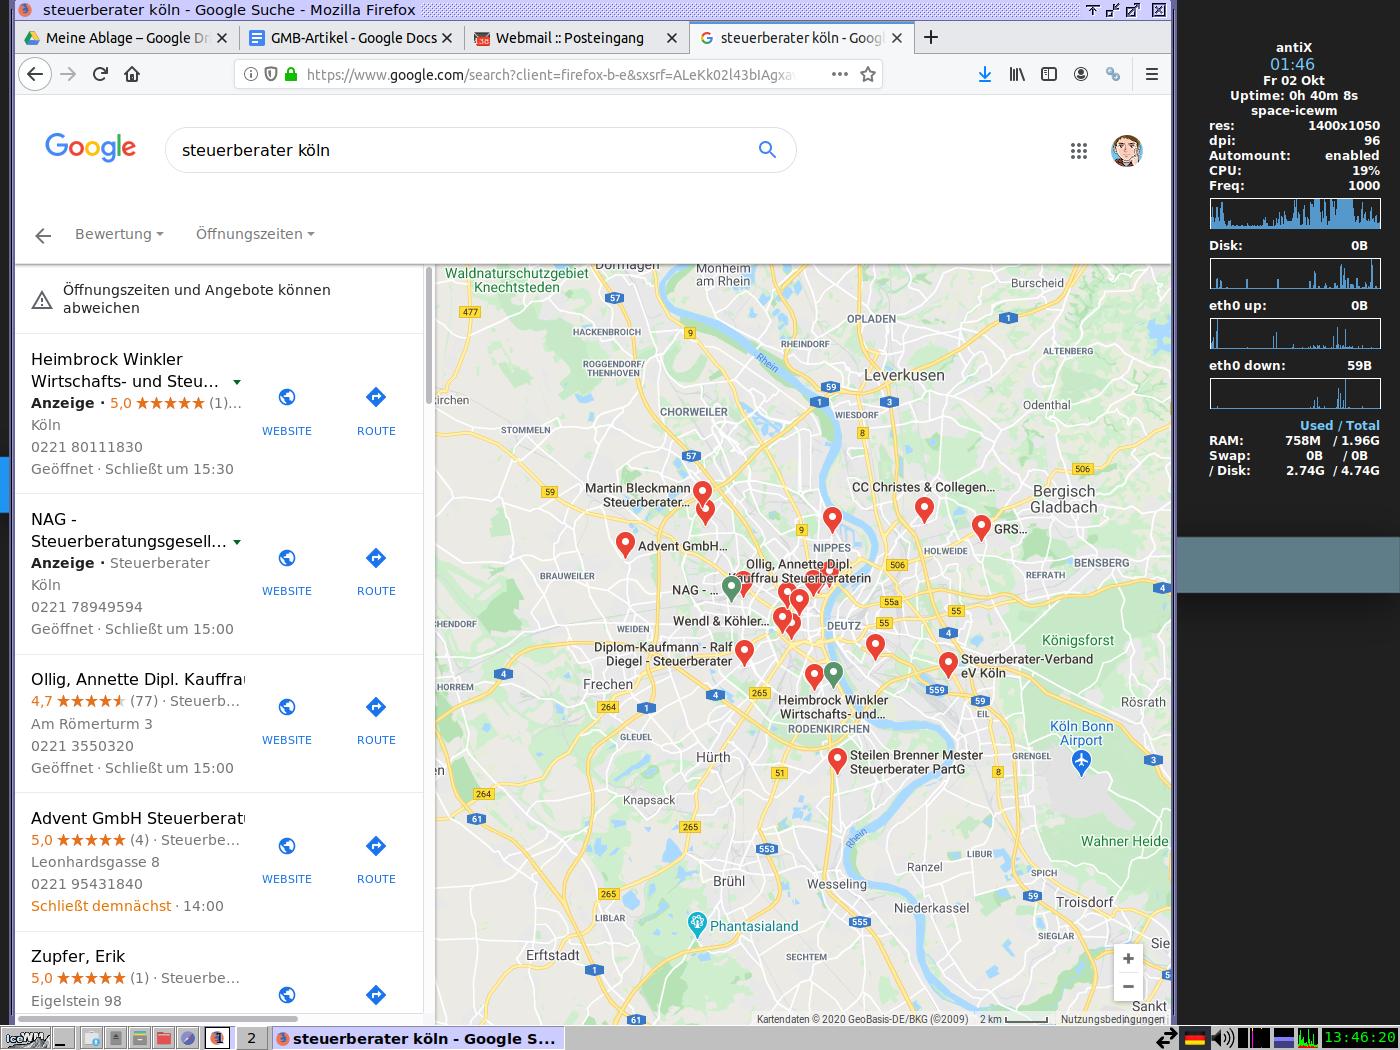 Abbildung 1: Local Finder und Maps zu "Steuerberater Köln"